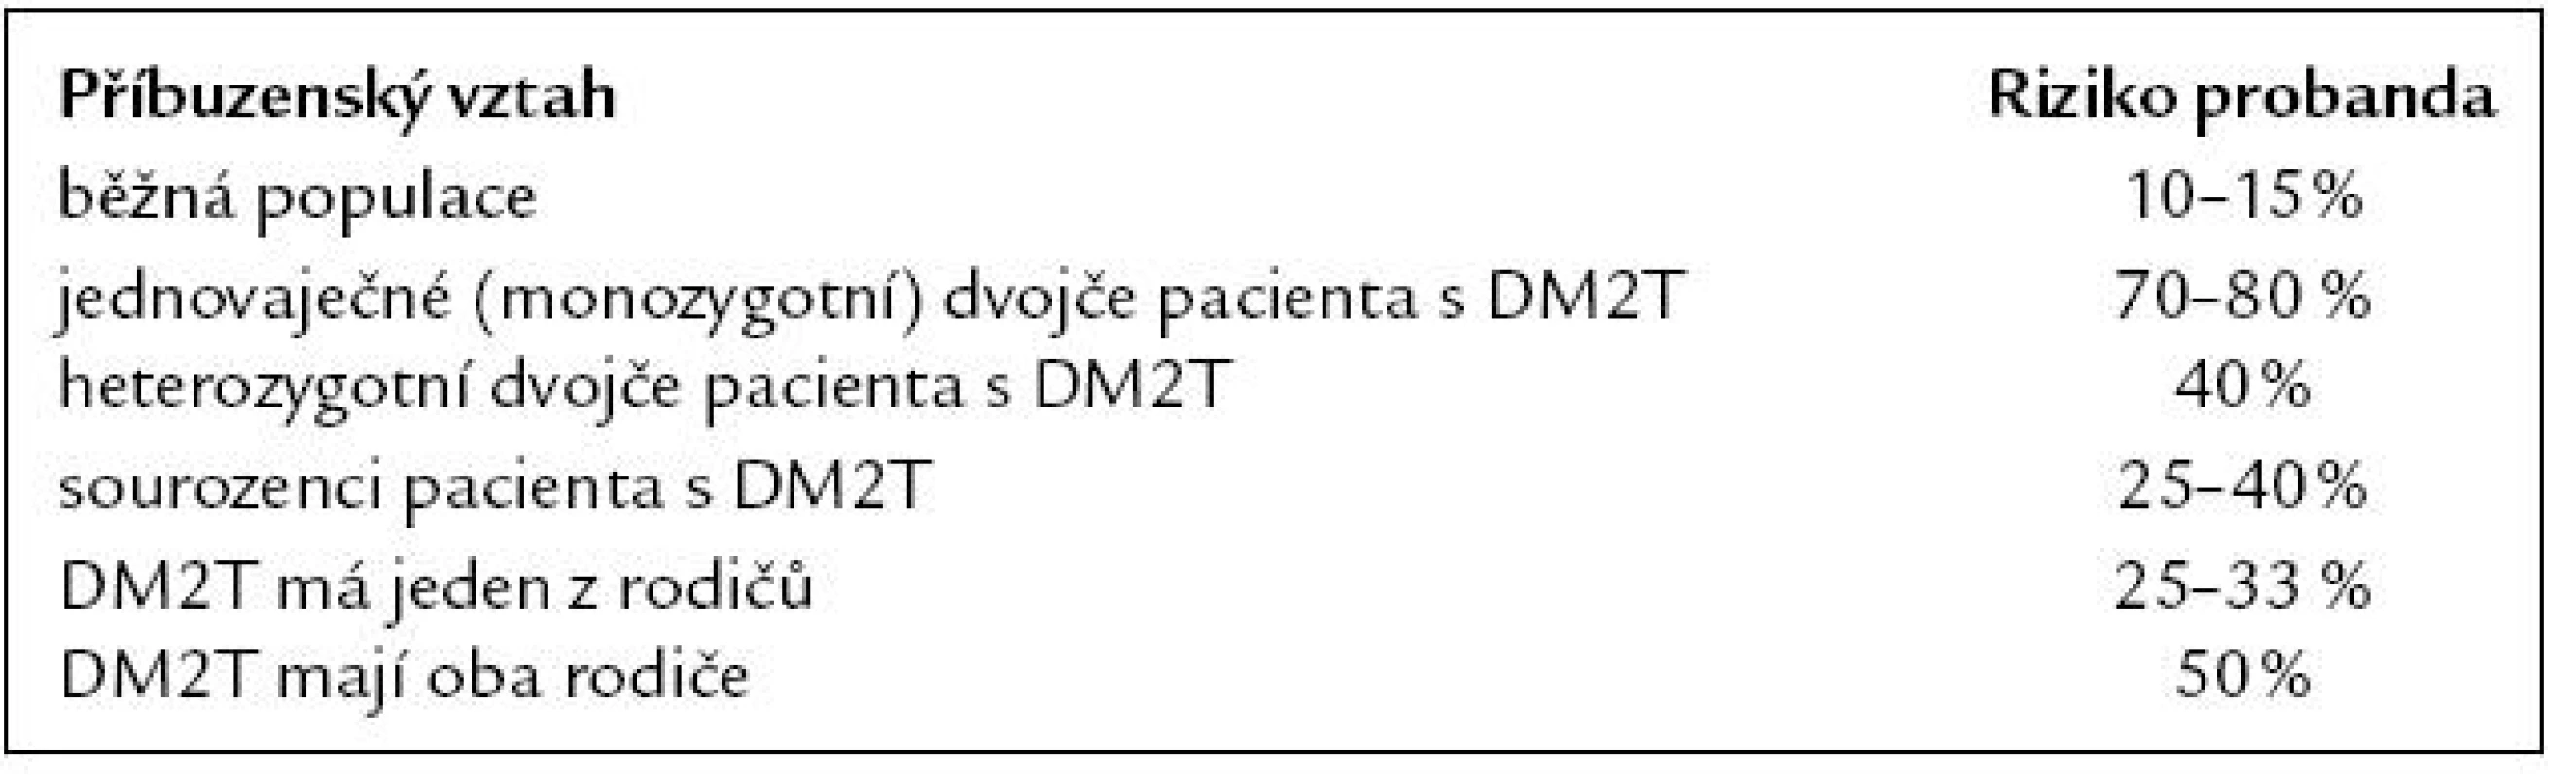 Riziko DM2T podle příbuzenského vztahu probanda [33].